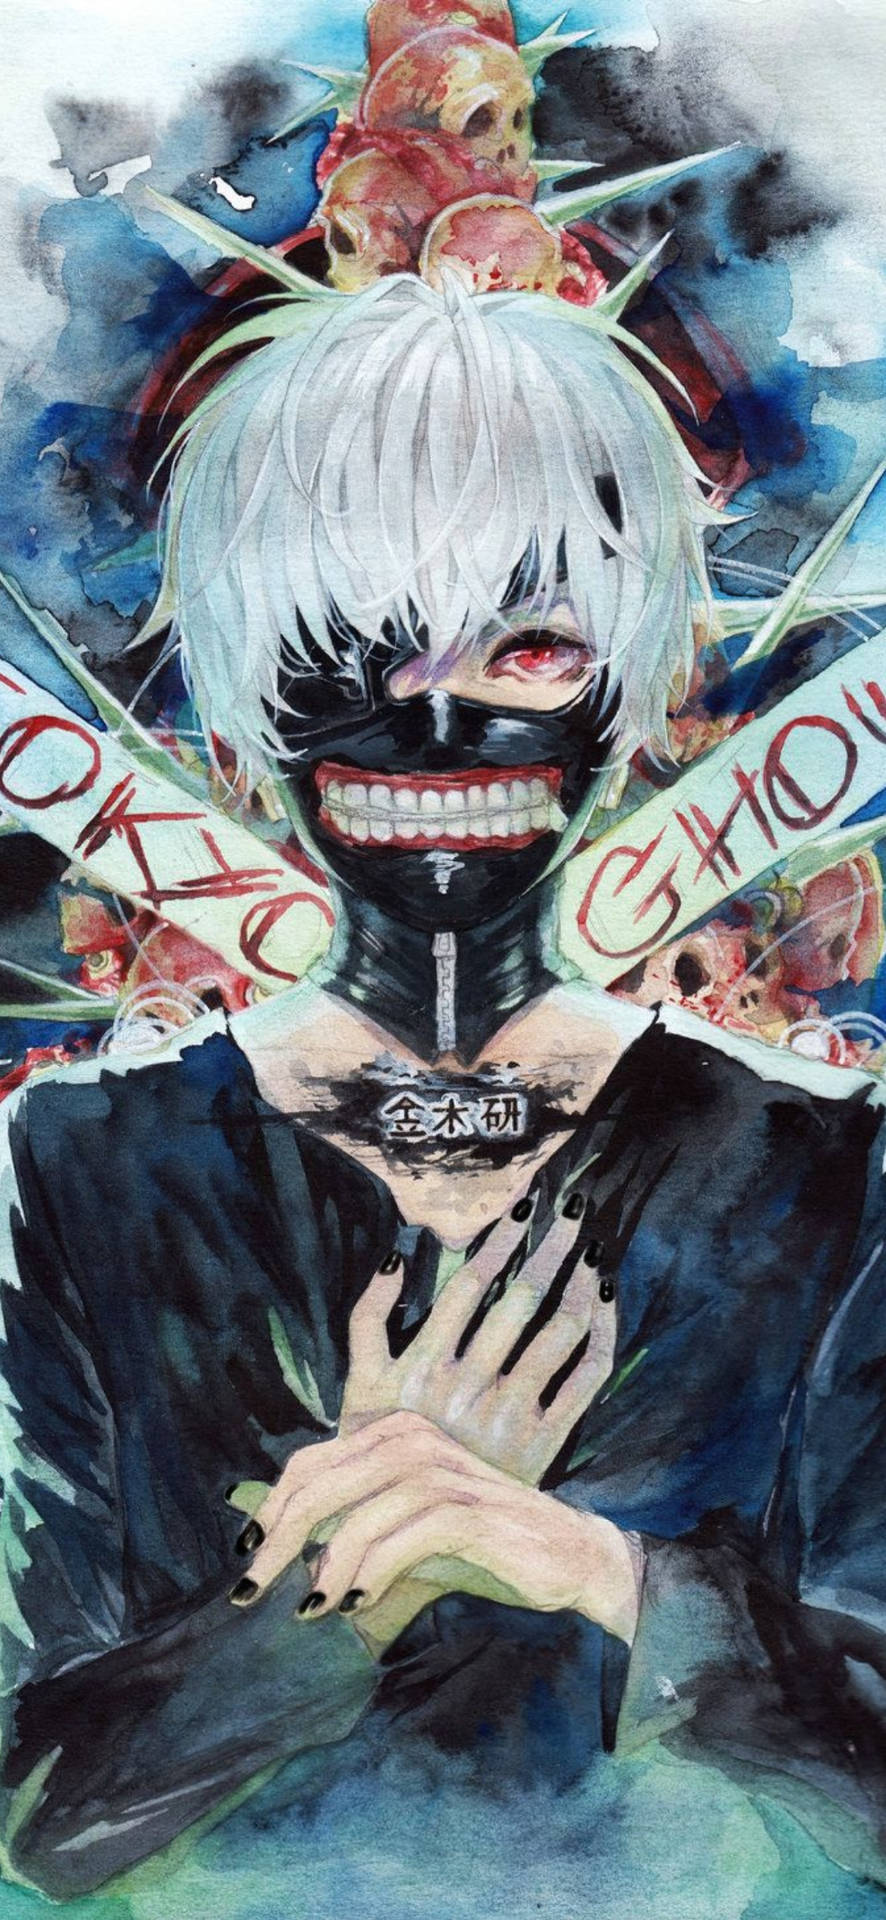 Tokyo Ghoul Fan Art: Tokyo Ghoul  Tokyo ghoul fan art, Tokyo ghoul  wallpapers, Tokyo ghoul anime